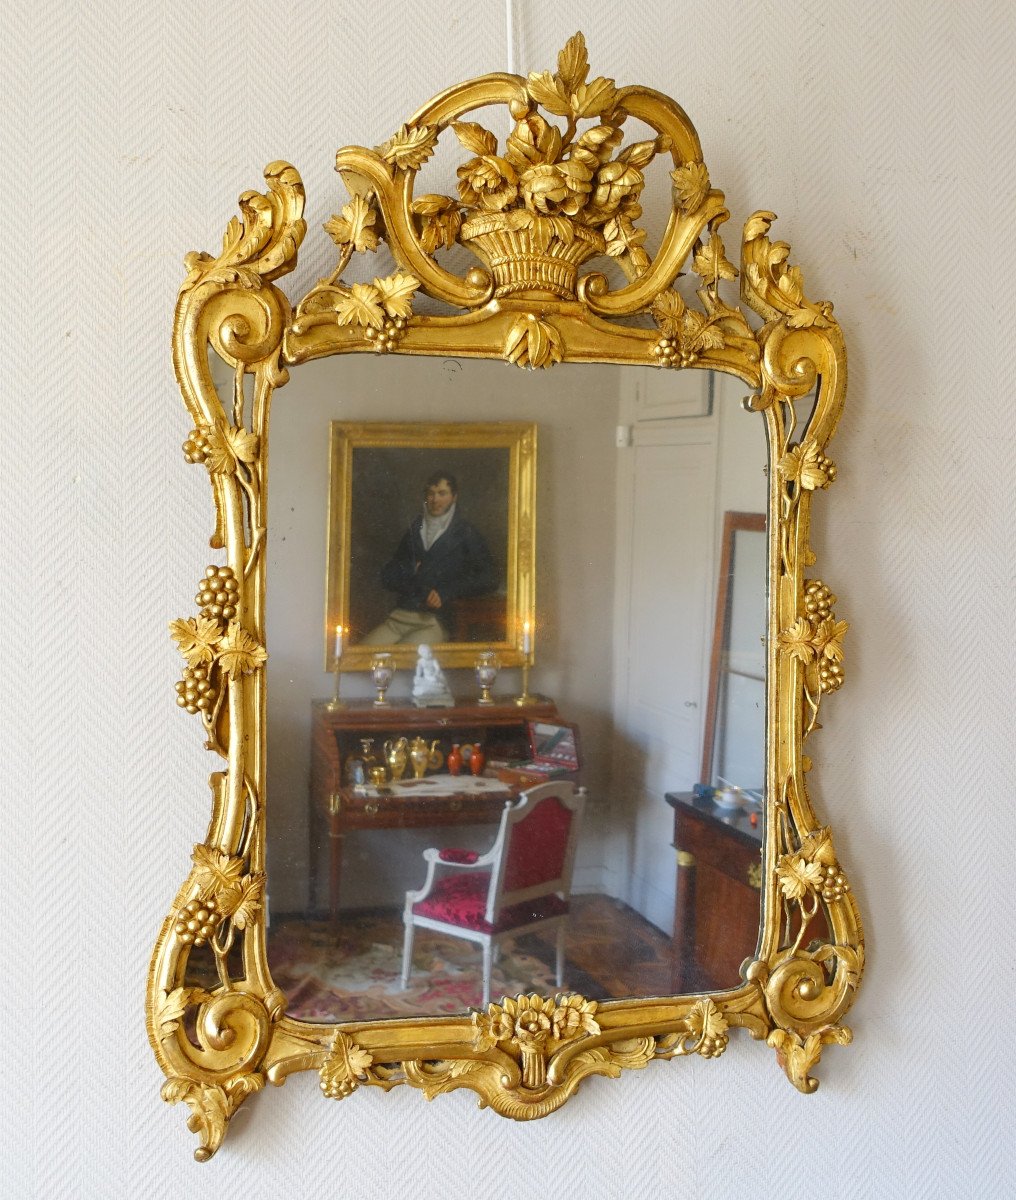 Grand Miroir Provencal d'époque Louis XV En Bois Doré Richement Sculpté, Glace Au Mercure-photo-2